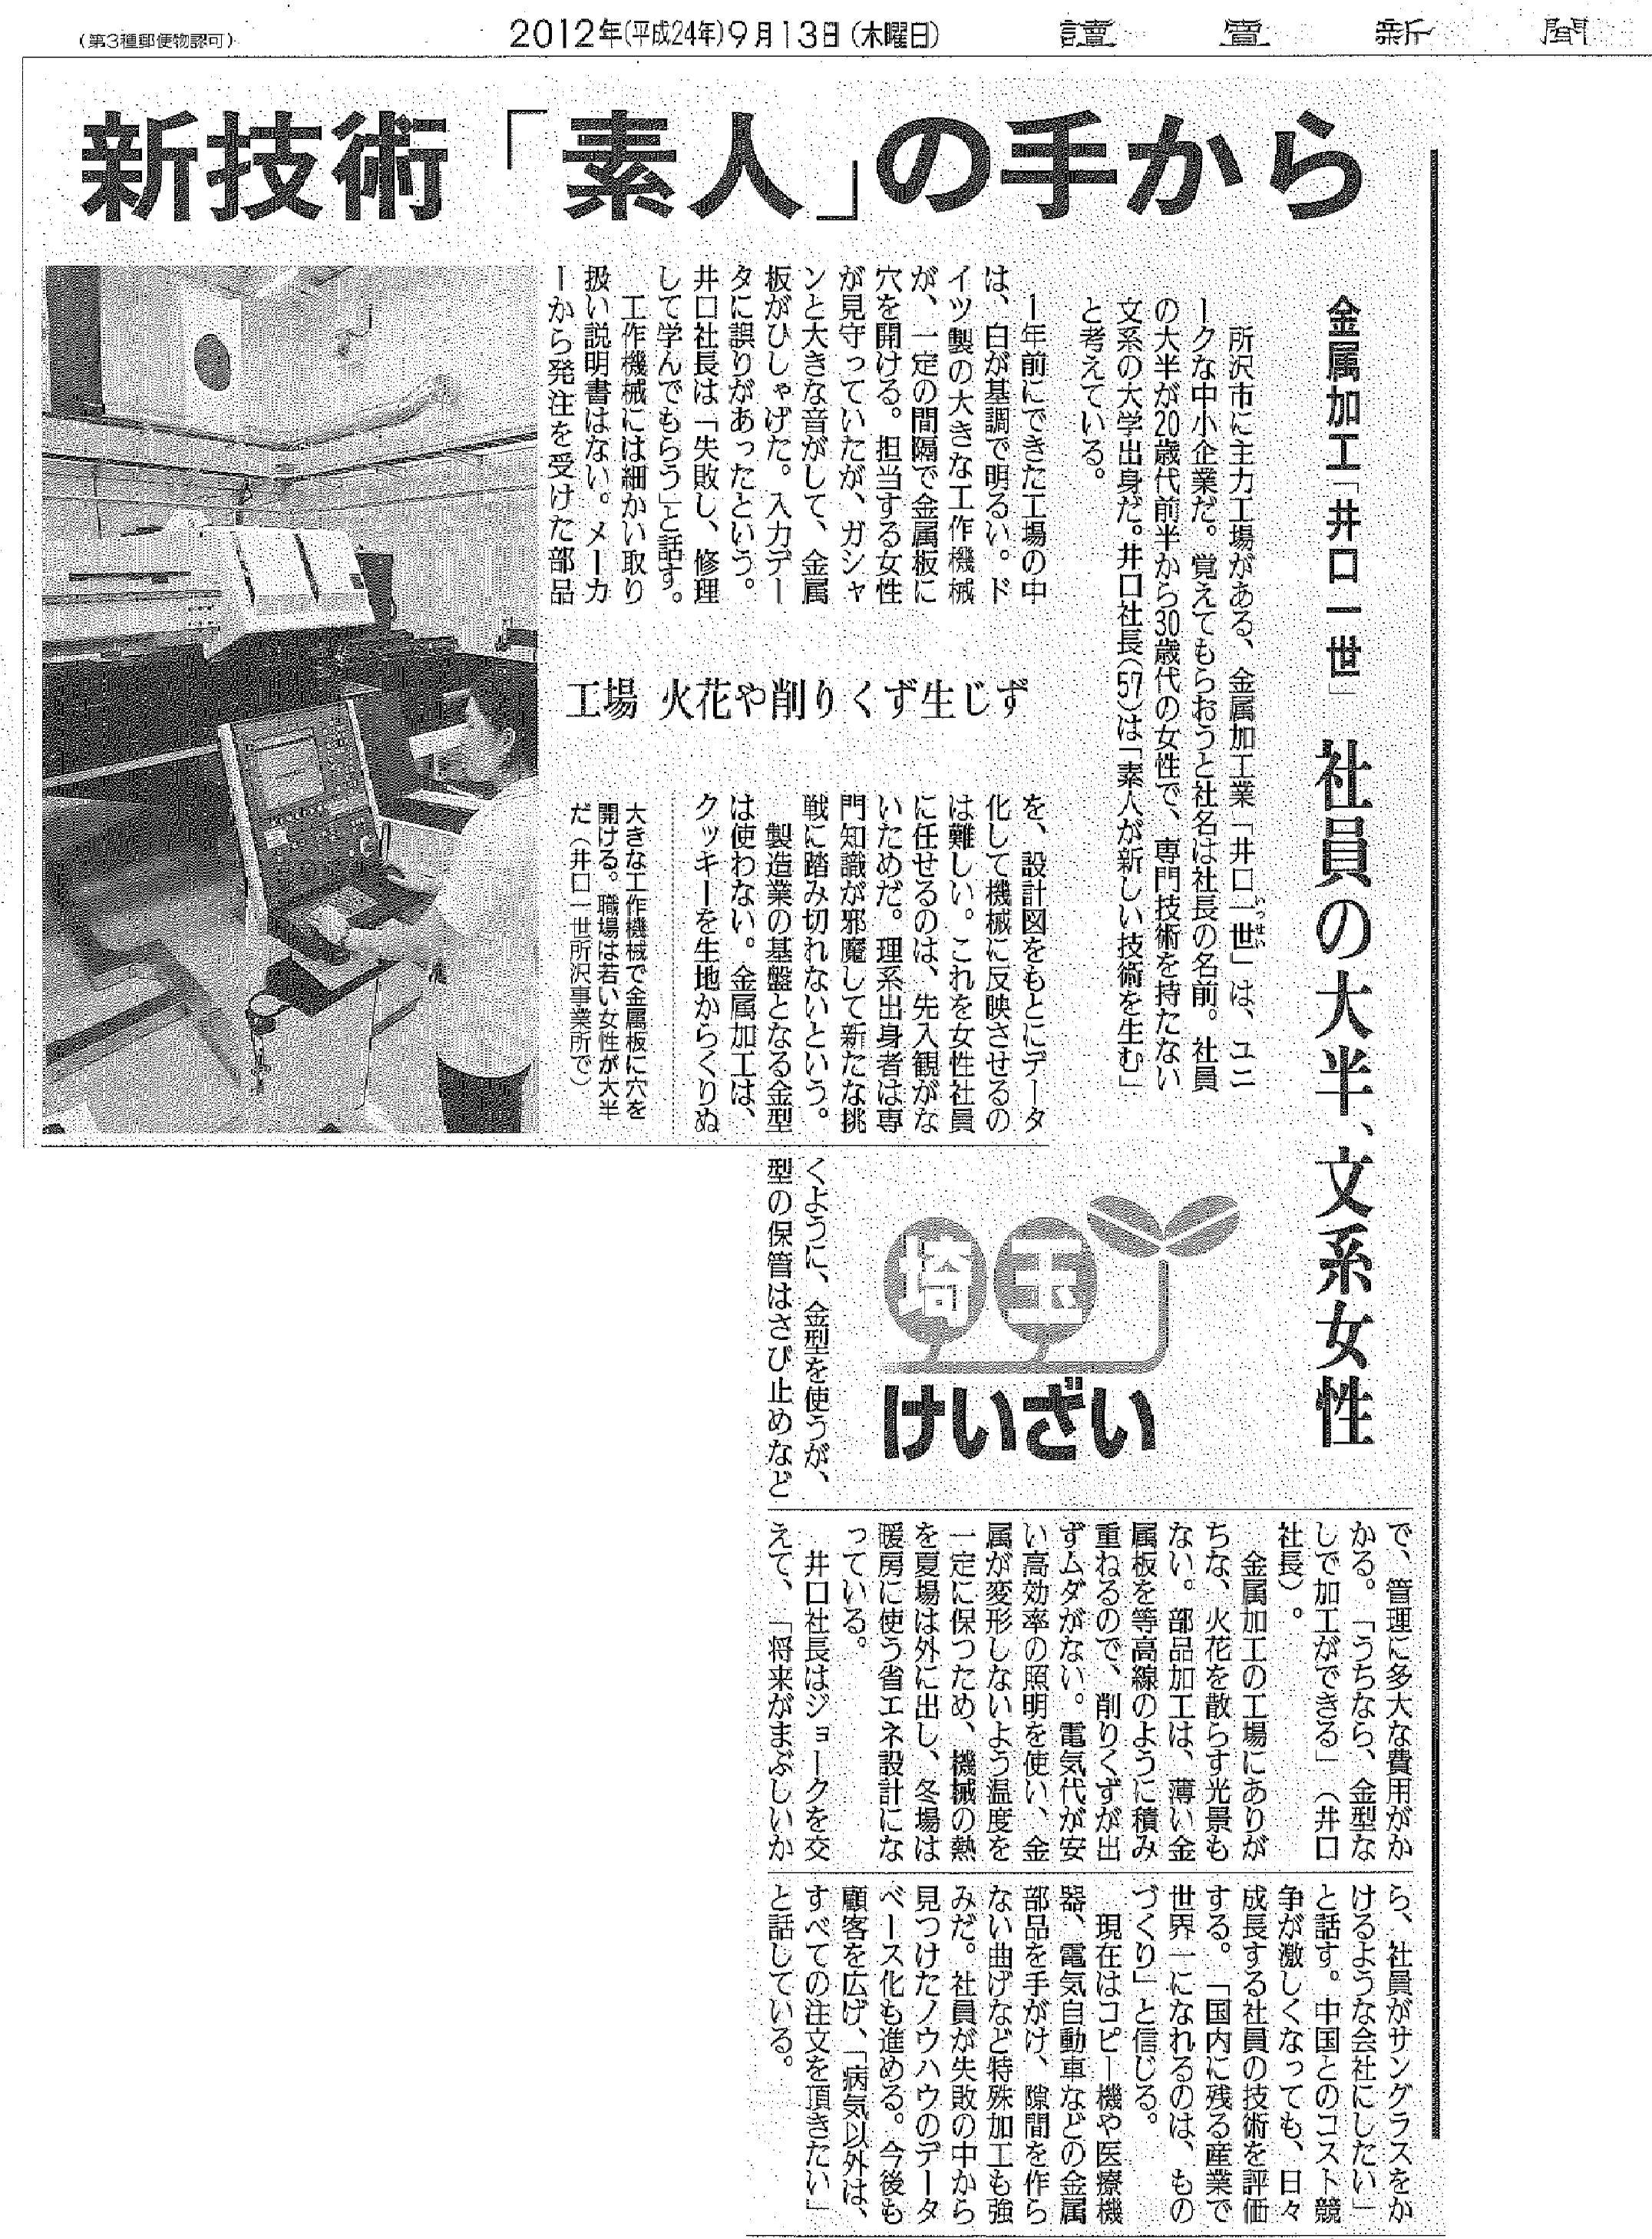 読売新聞2012年9月13日発行に掲載されました